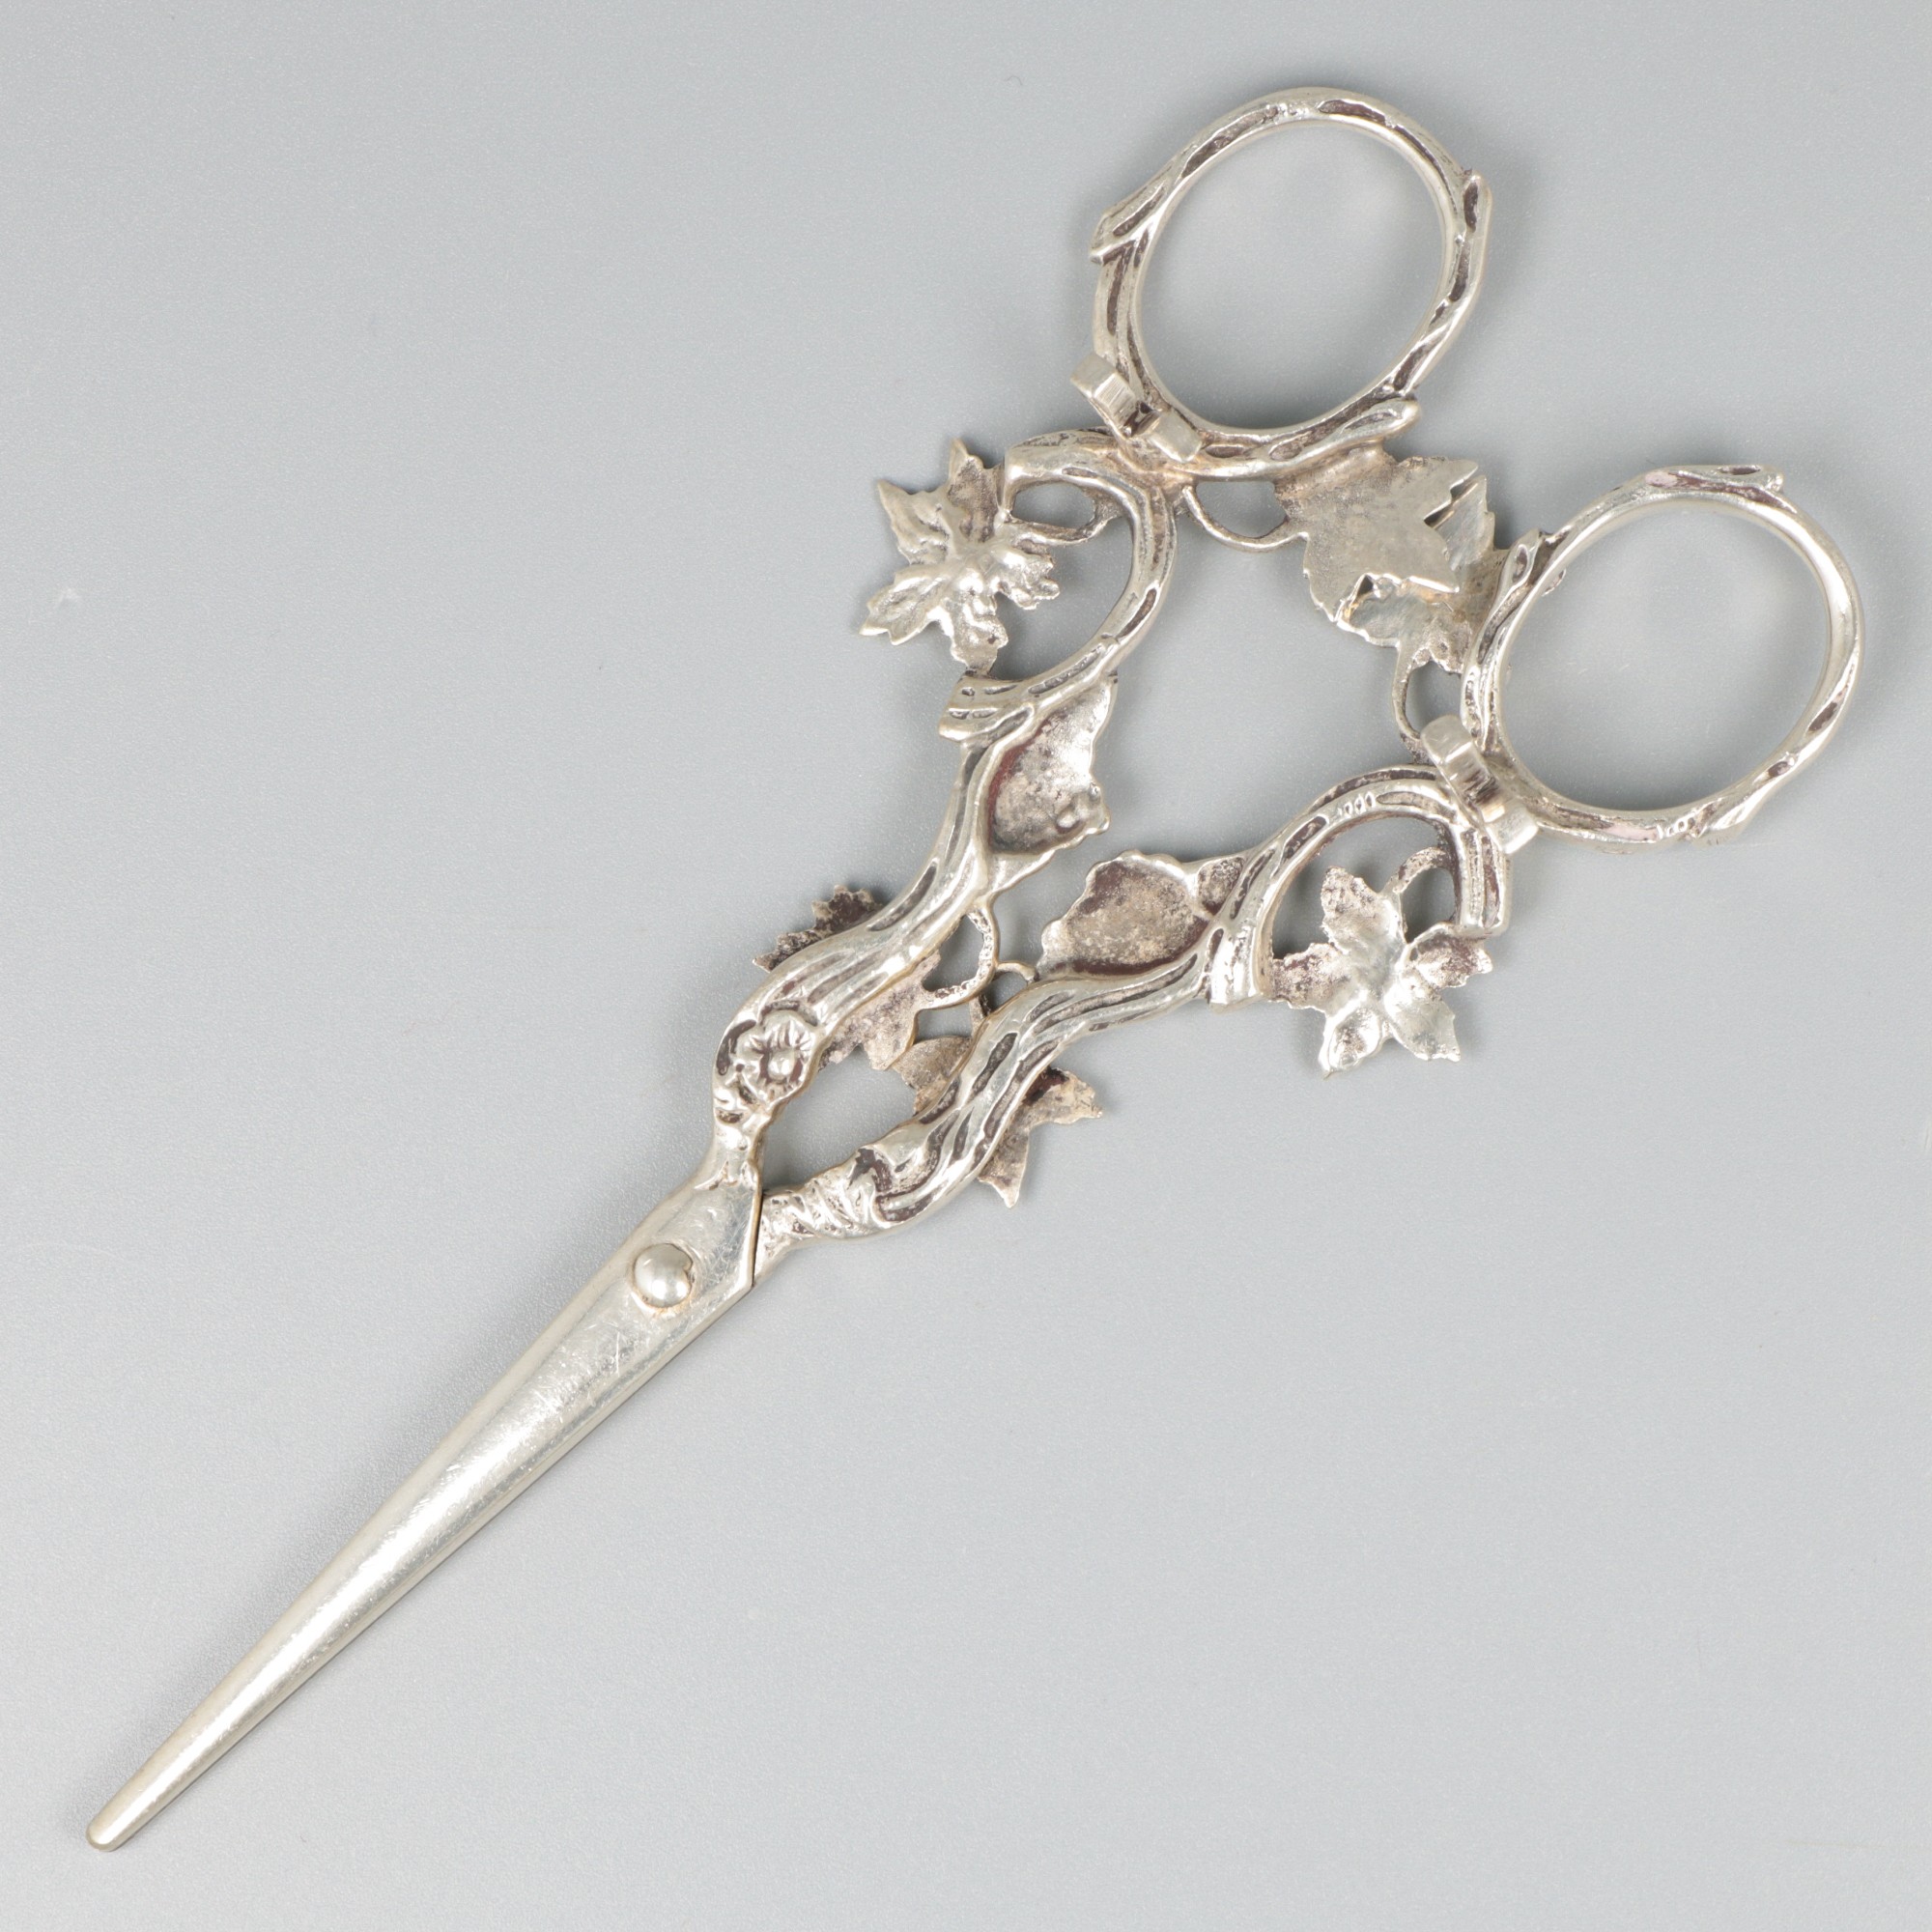 Grape scissors silver. - Image 2 of 8